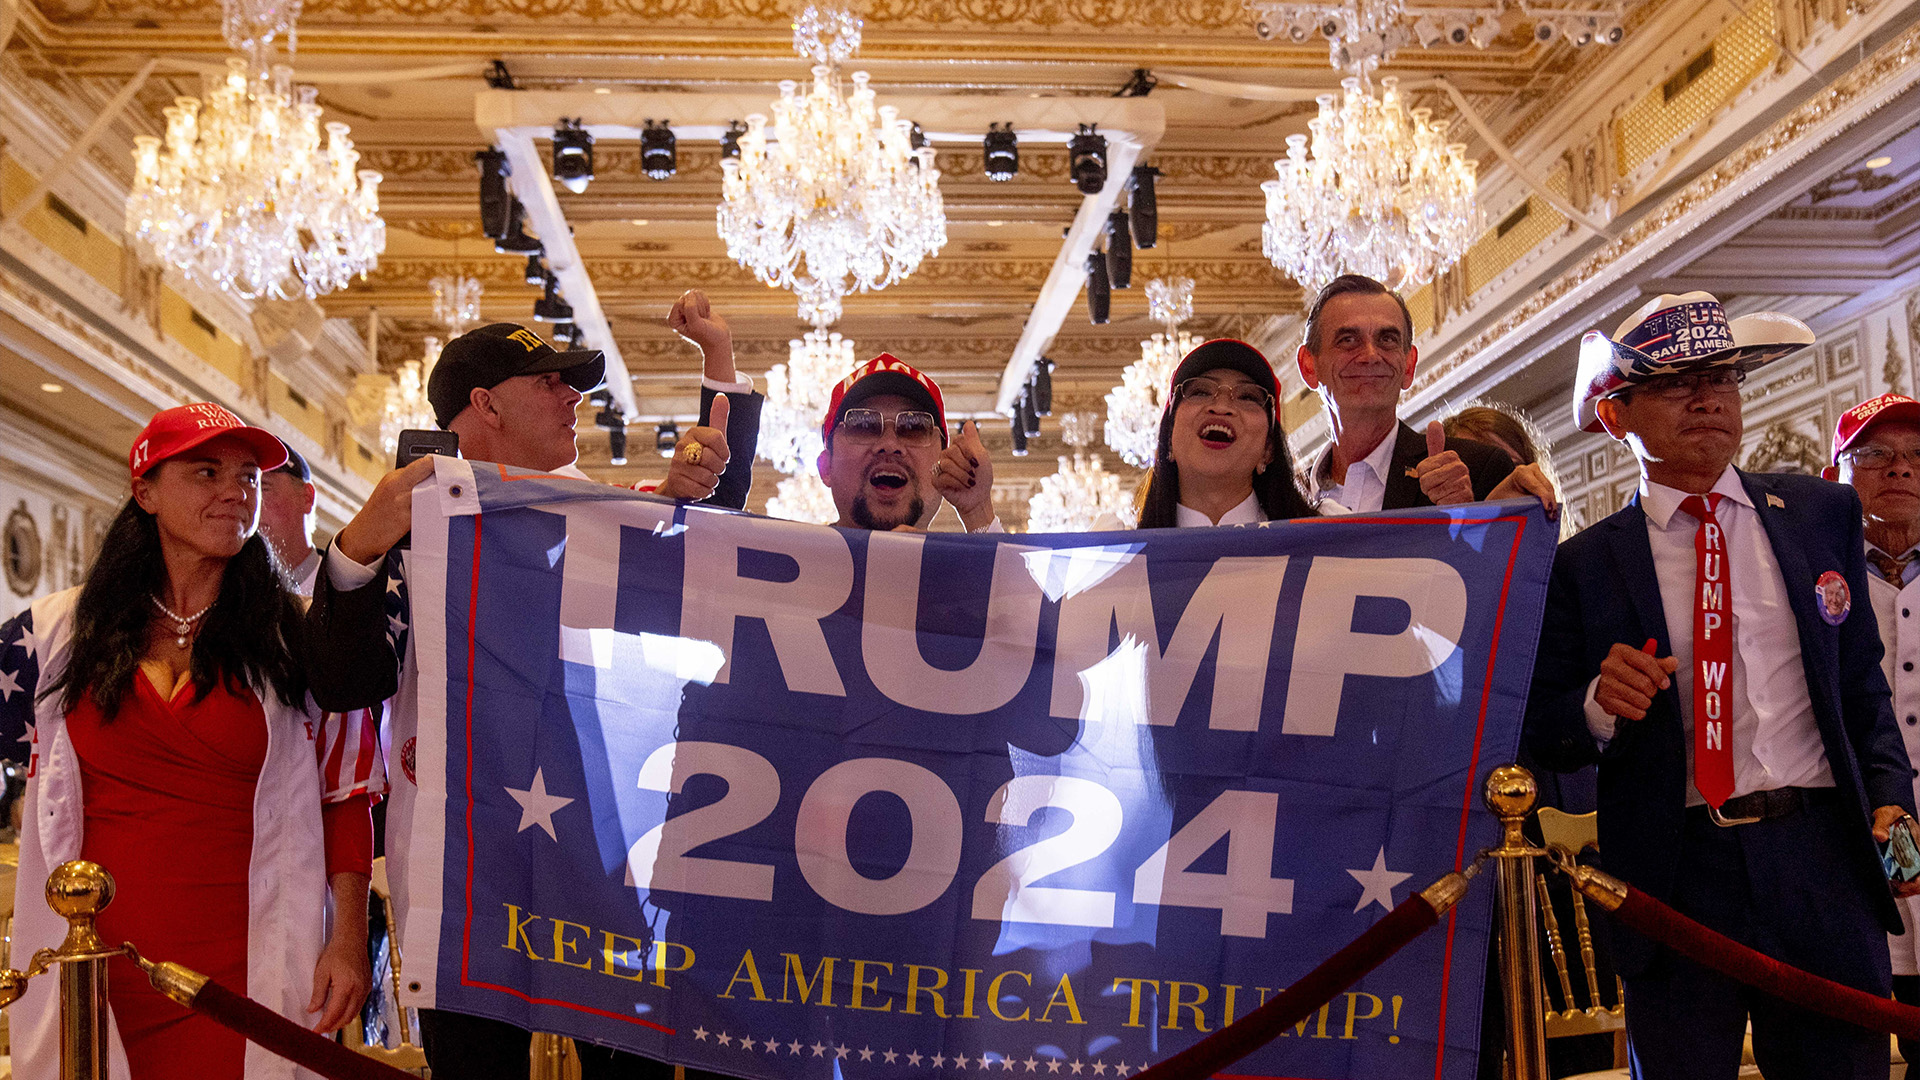 Les partisans applaudissent après que l'ancien président Donald Trump a annoncé qu'il se présente à la présidence pour la troisième fois à Mar-a-Lago à Palm Beach, en Floride, le mardi 15 novembre 2022.